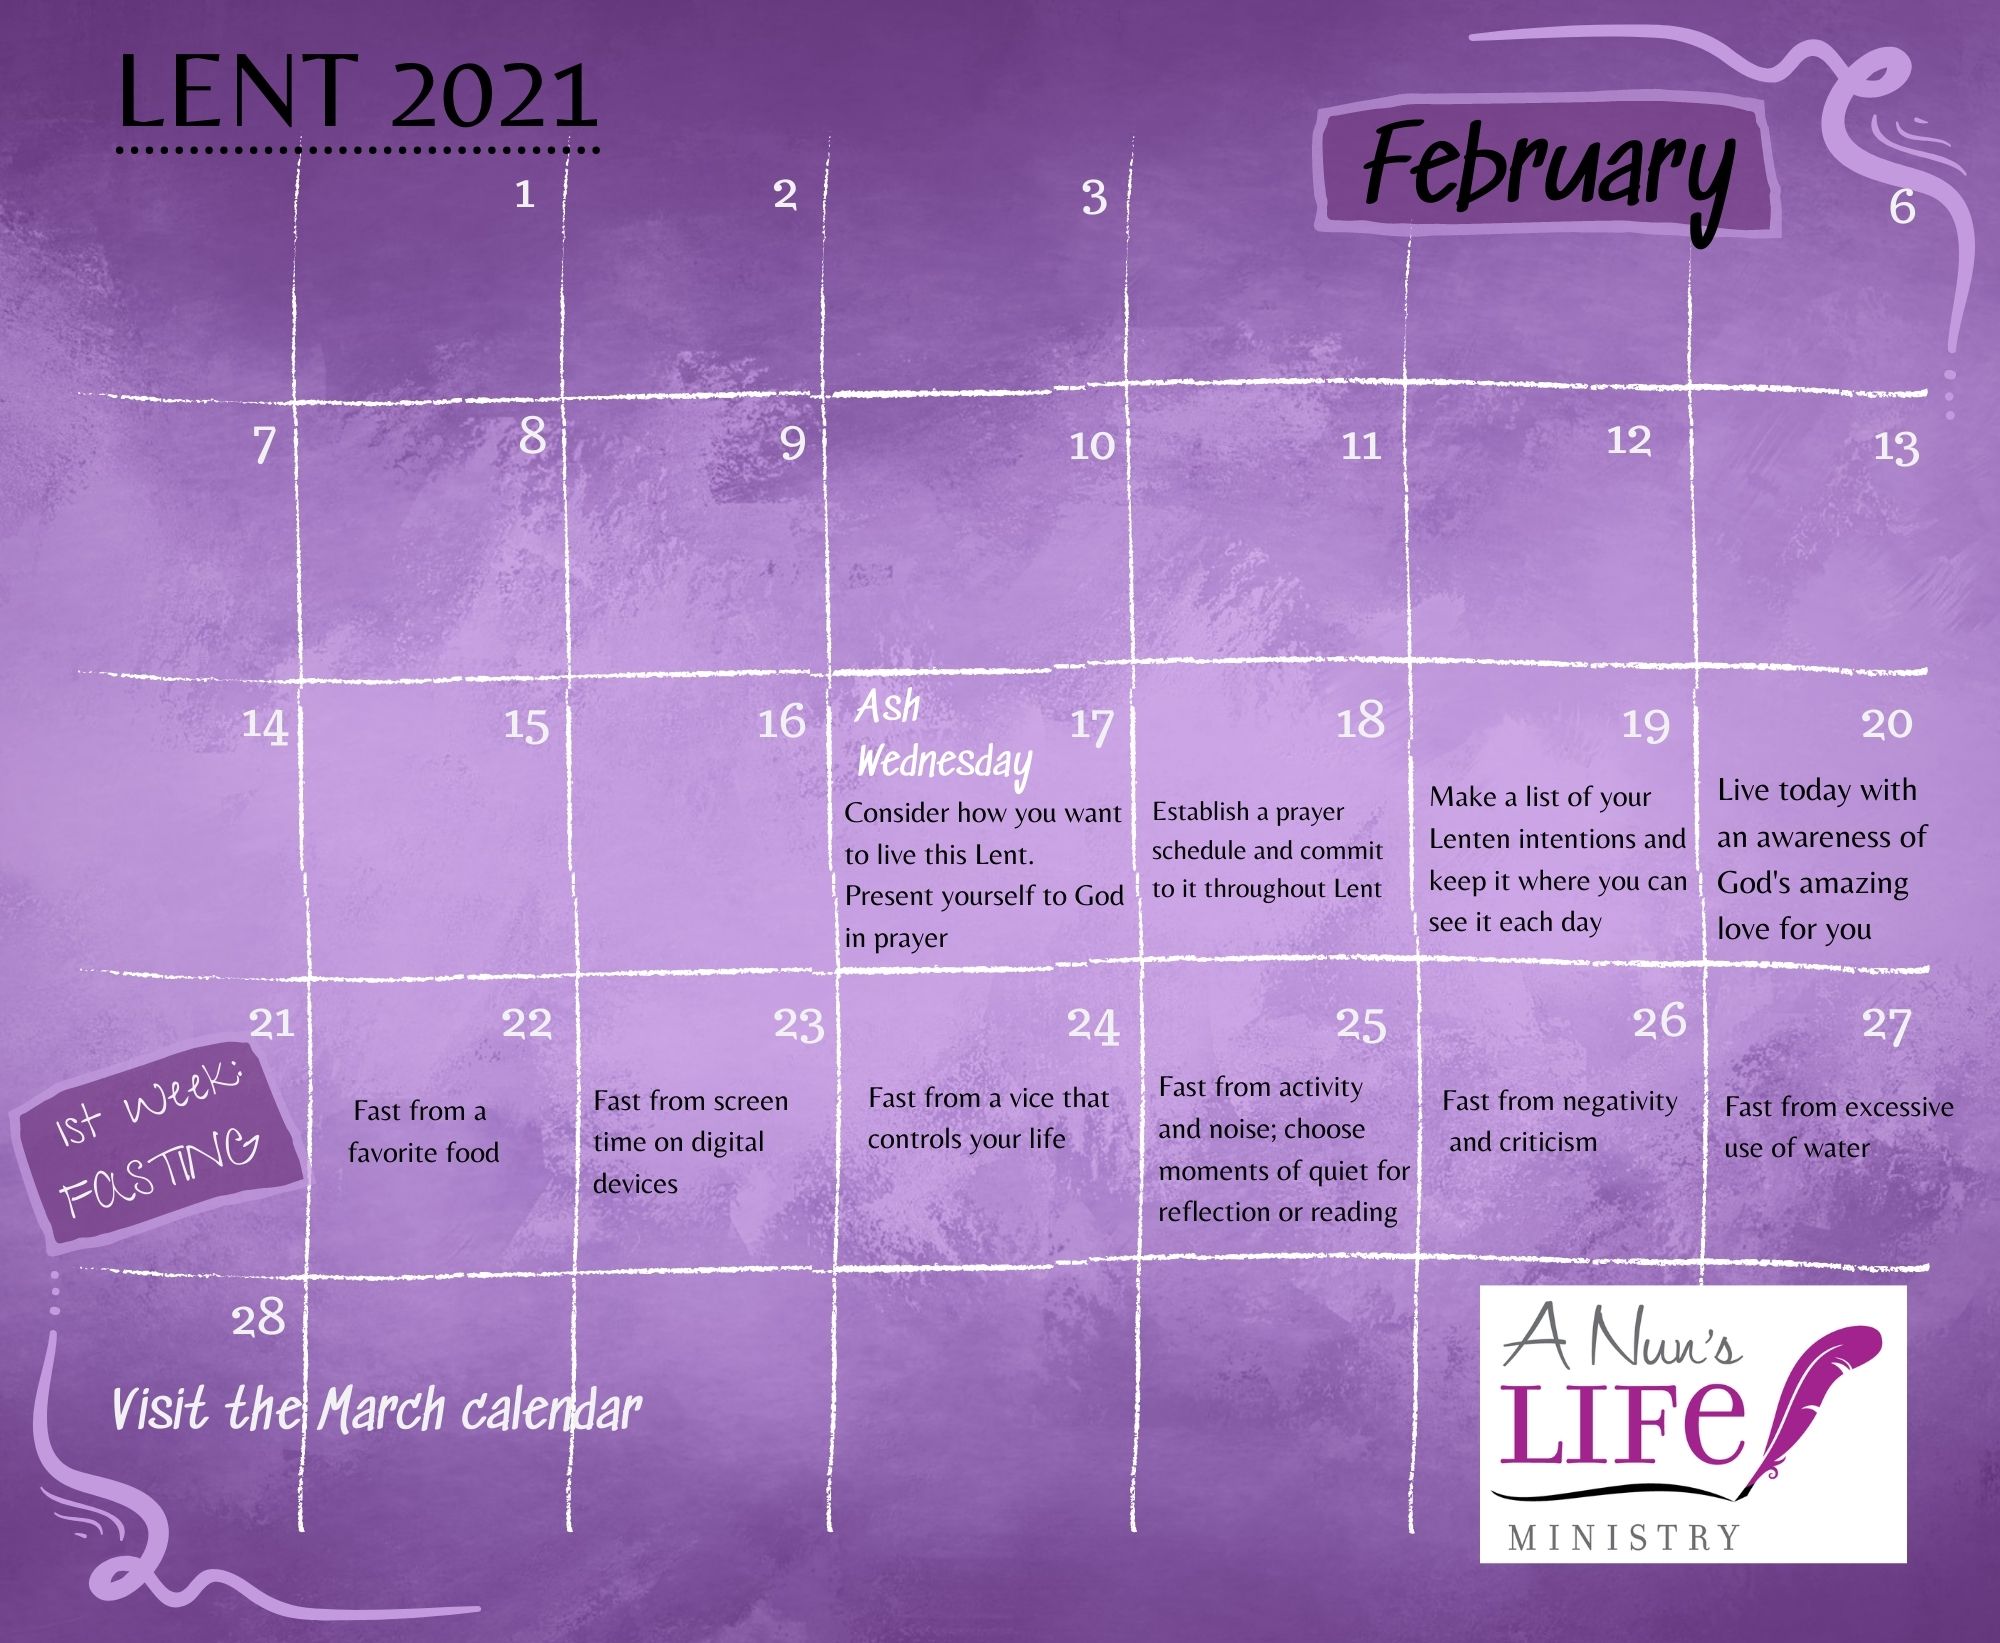 Lenten Calendar 2021 A Nun's Life Ministry